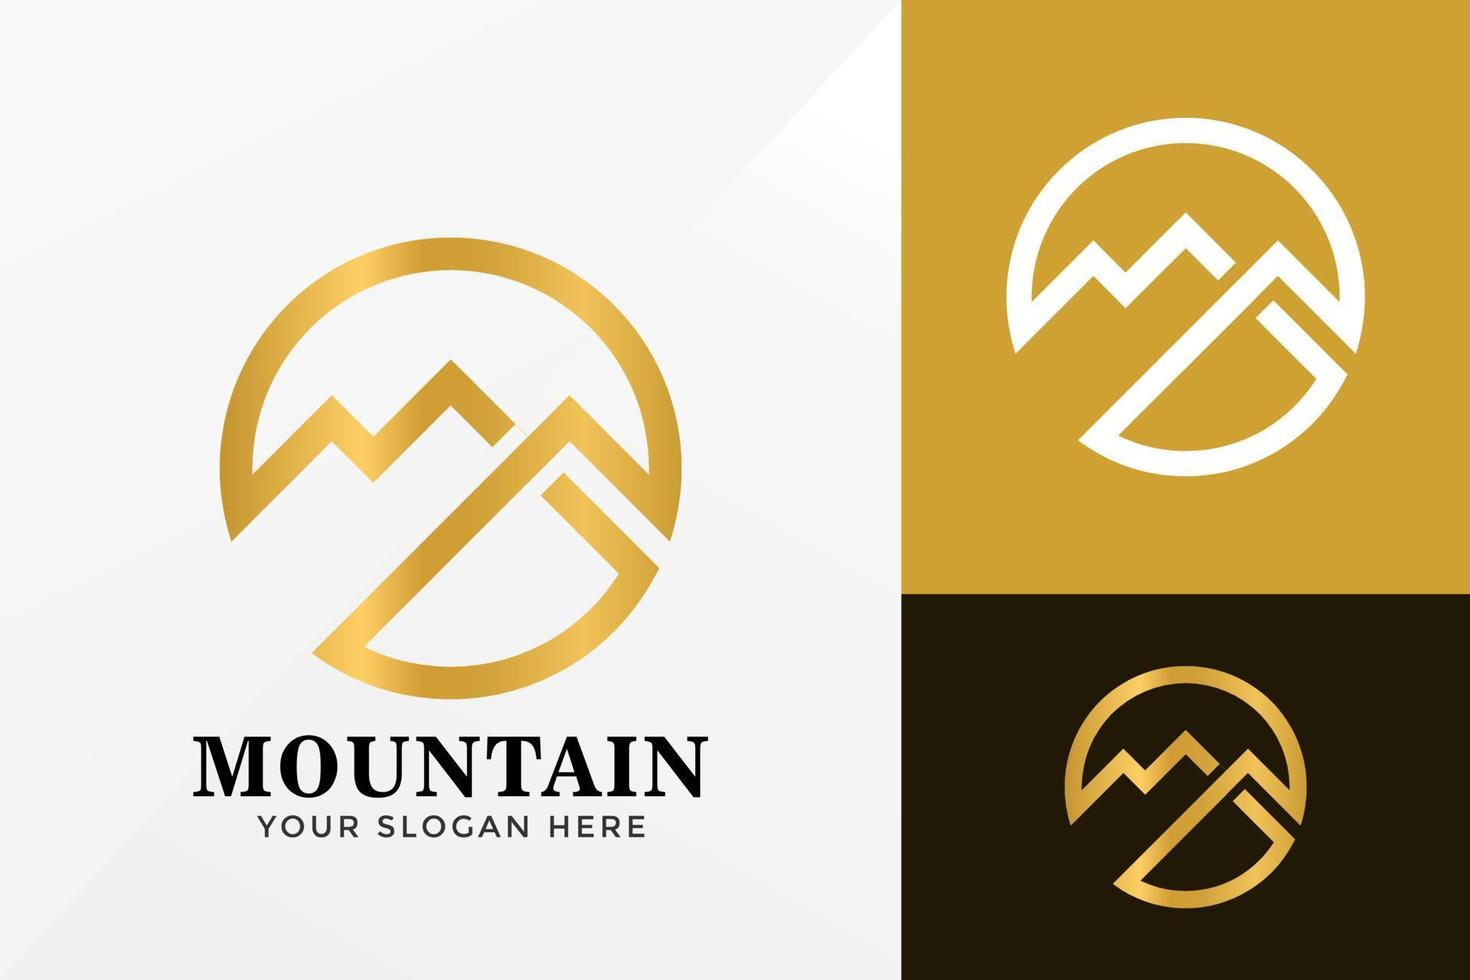 Circle Golden Mountain Logo Design, Brand Identity logos vector, modern logo, Logo Designs Vector Illustration Template